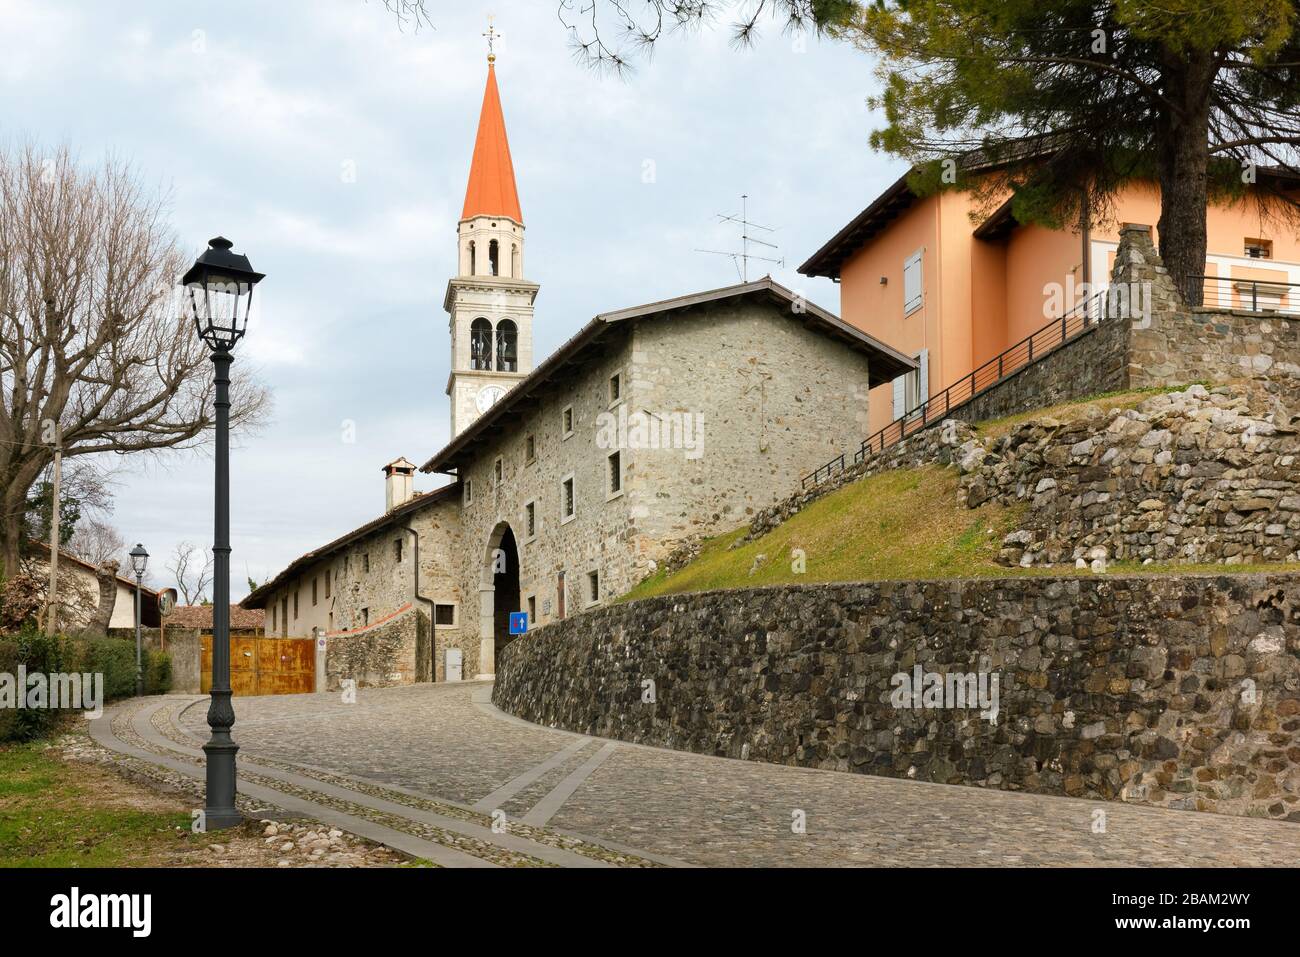 Storico borgo fortificato di Santa Margherita del Gruagno, nei pressi di Moruzzo, in Friuli, Italia Foto Stock